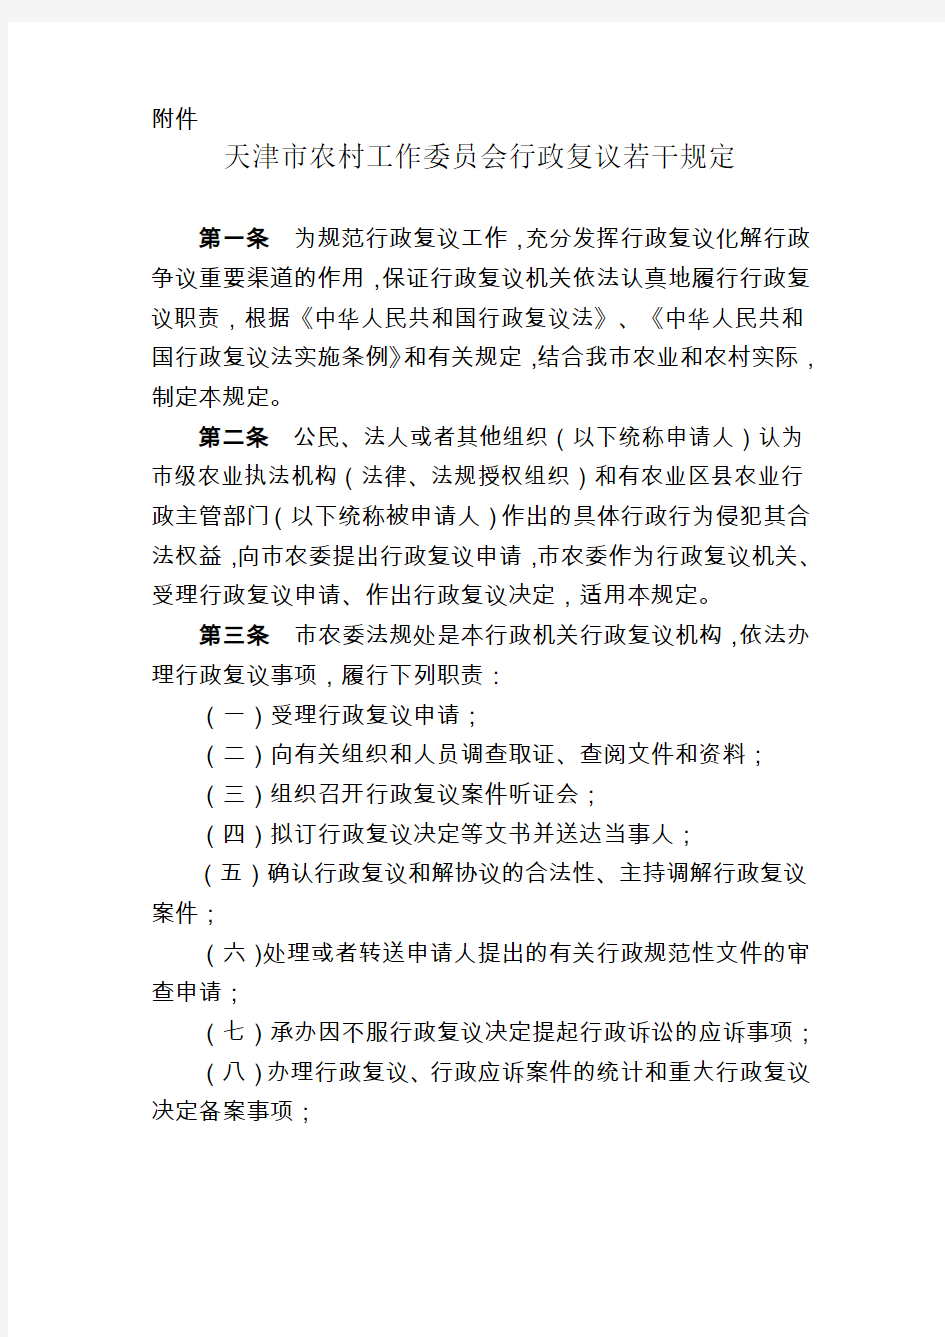 天津市农村工作委员会行政复议若干规定